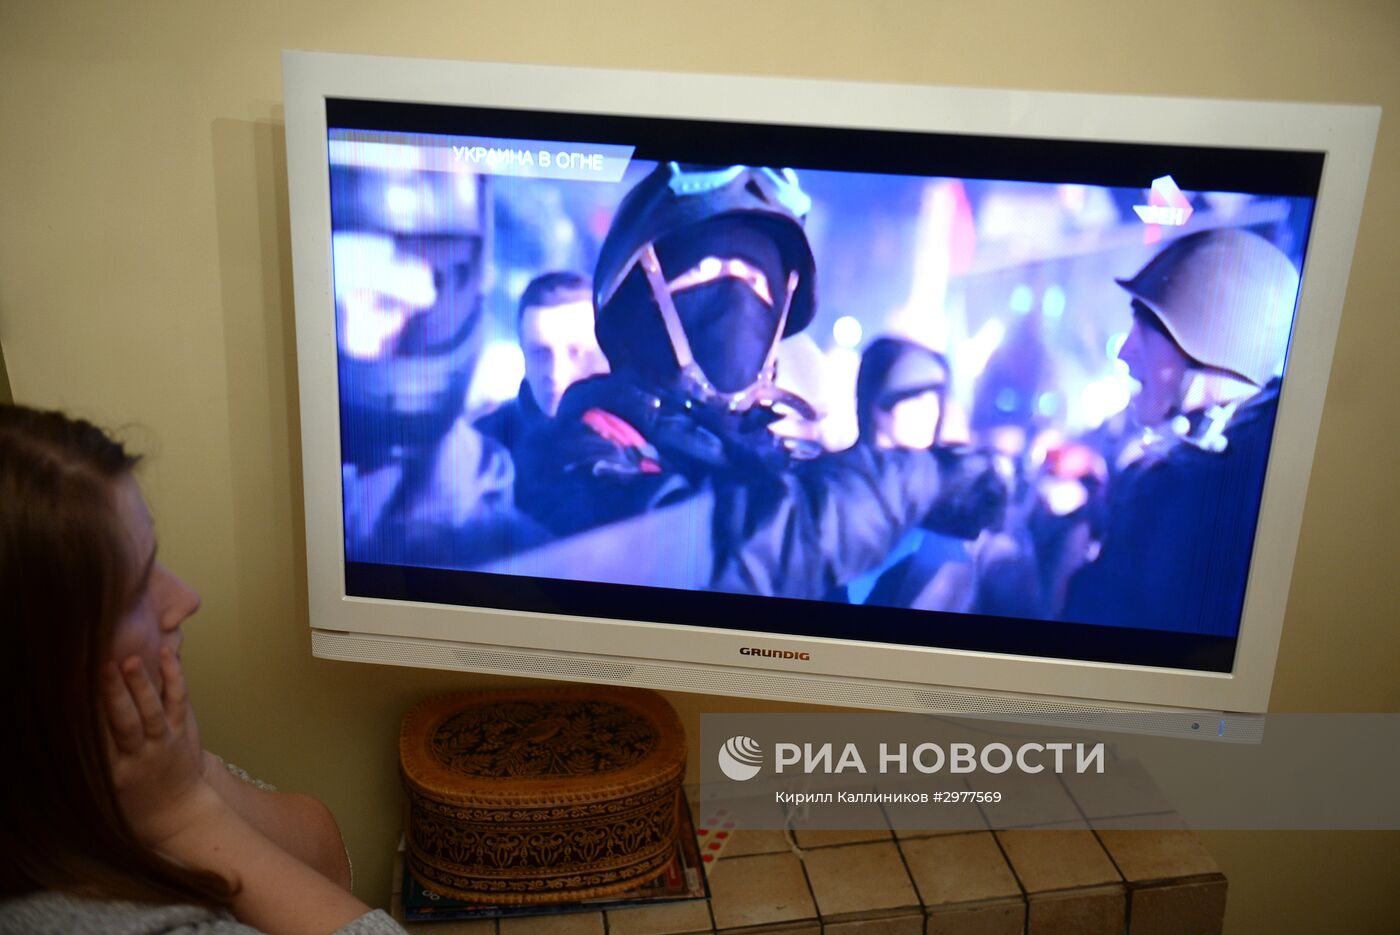 Просмотр документального фильма Оливера Стоуна "Украина в огне"